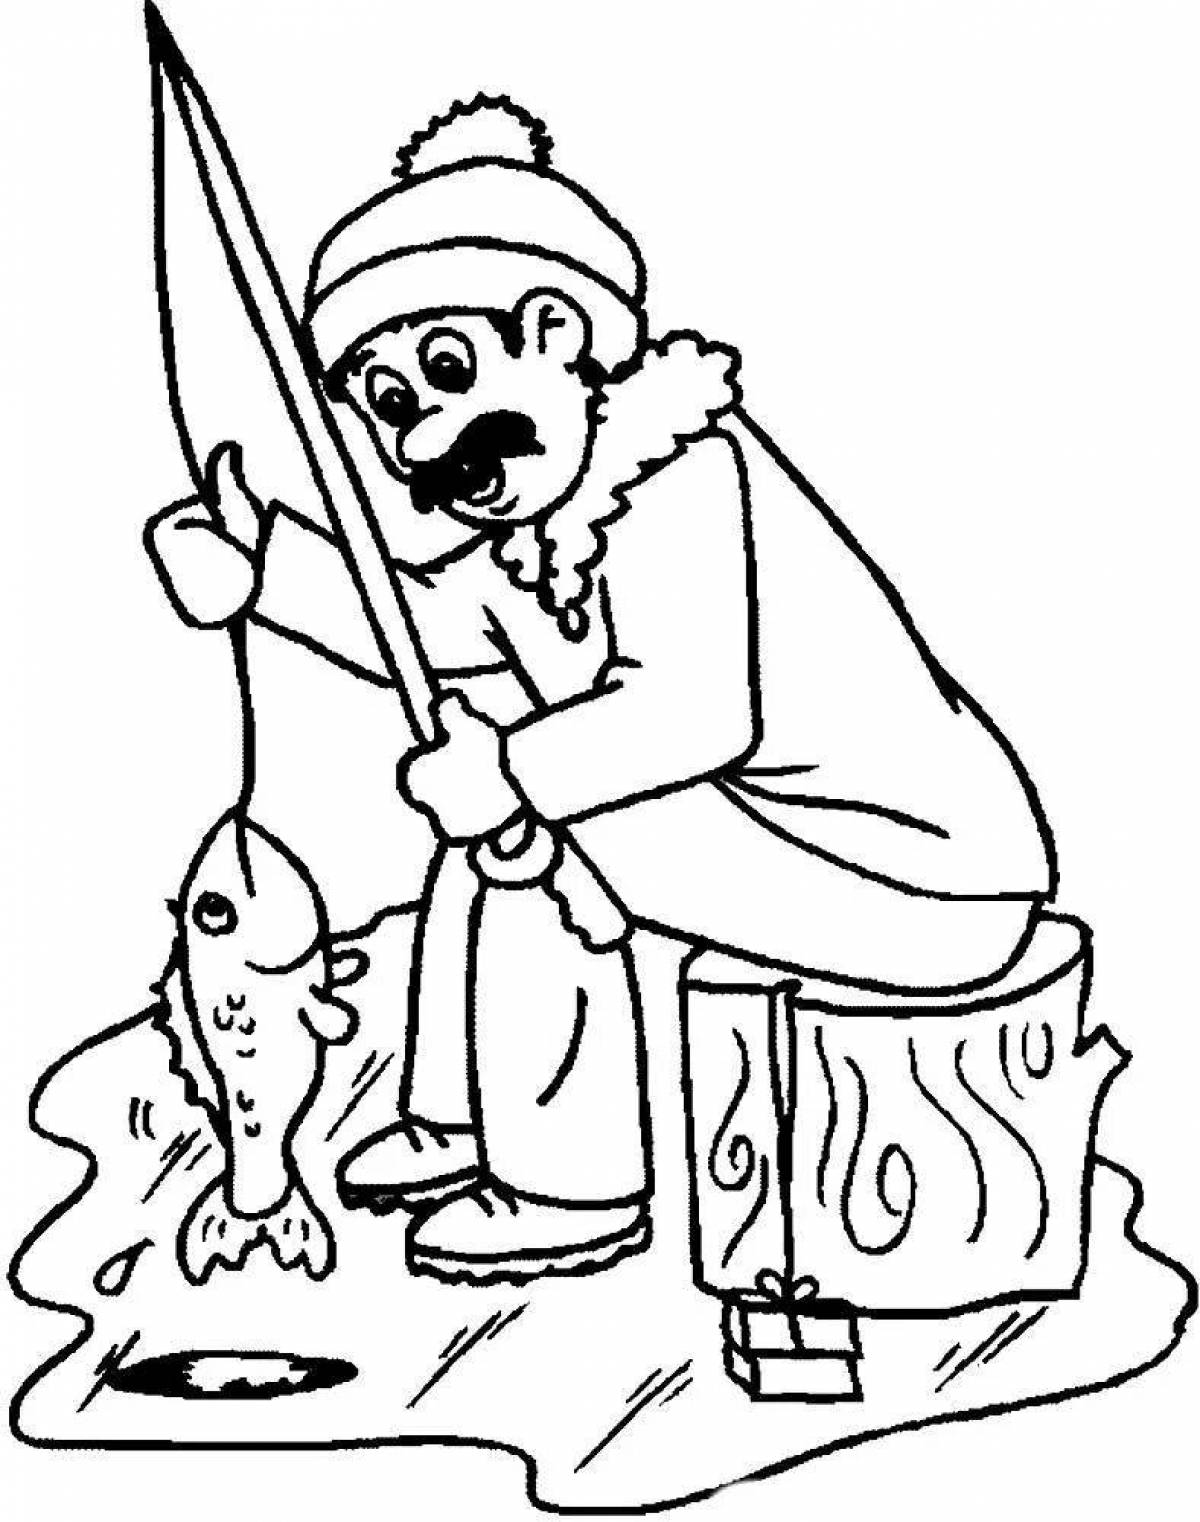 Fun coloring book fisherman for kids